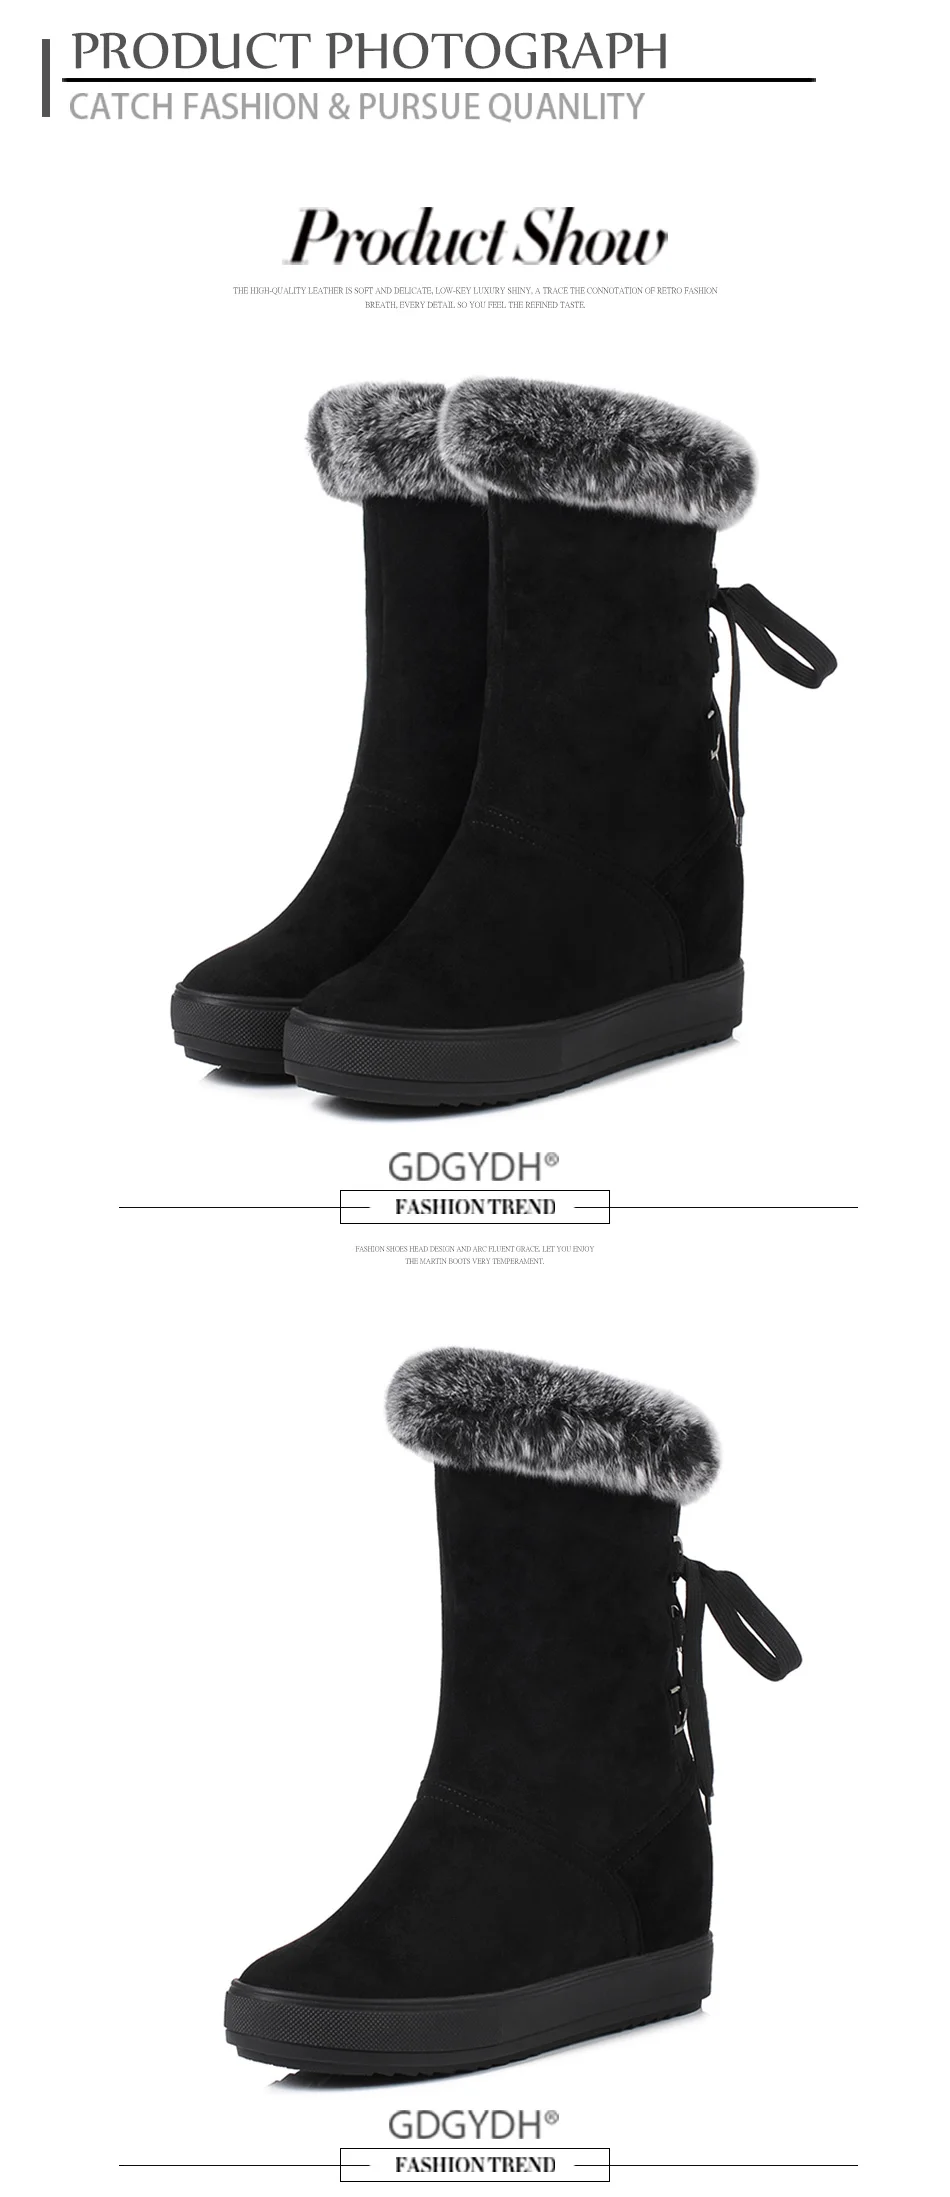 Gdgydh/зимние сапоги на шнуровке; женская обувь с мехом внутри; Новинка года; зимняя теплая обувь на натуральном меху, увеличивающая рост; цвет черный, белый; хорошее качество